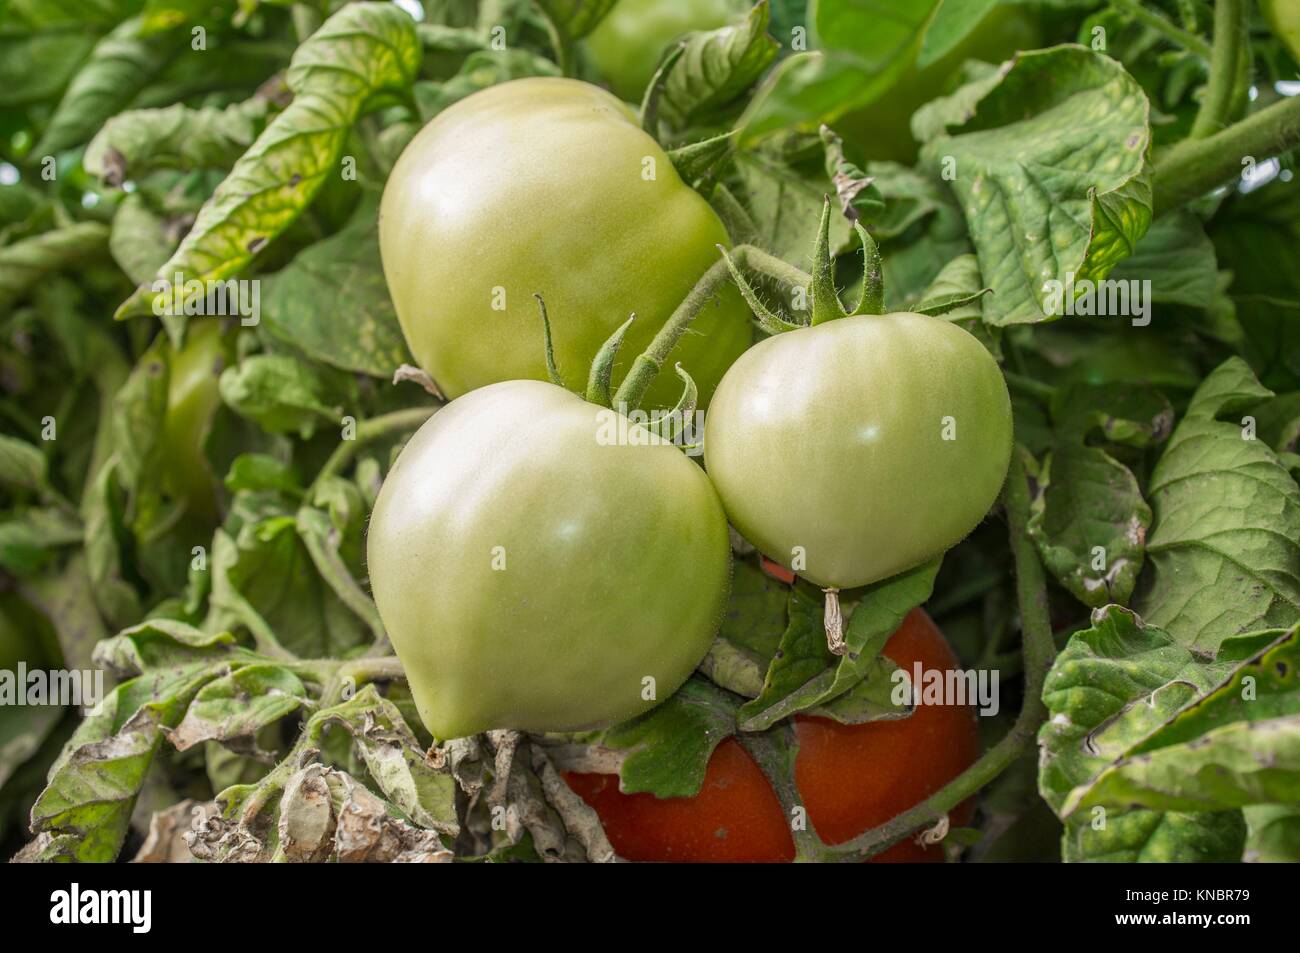 Los tomates verdes en planta en la comunidad local. La producción agrícola sostenible. Foto de stock